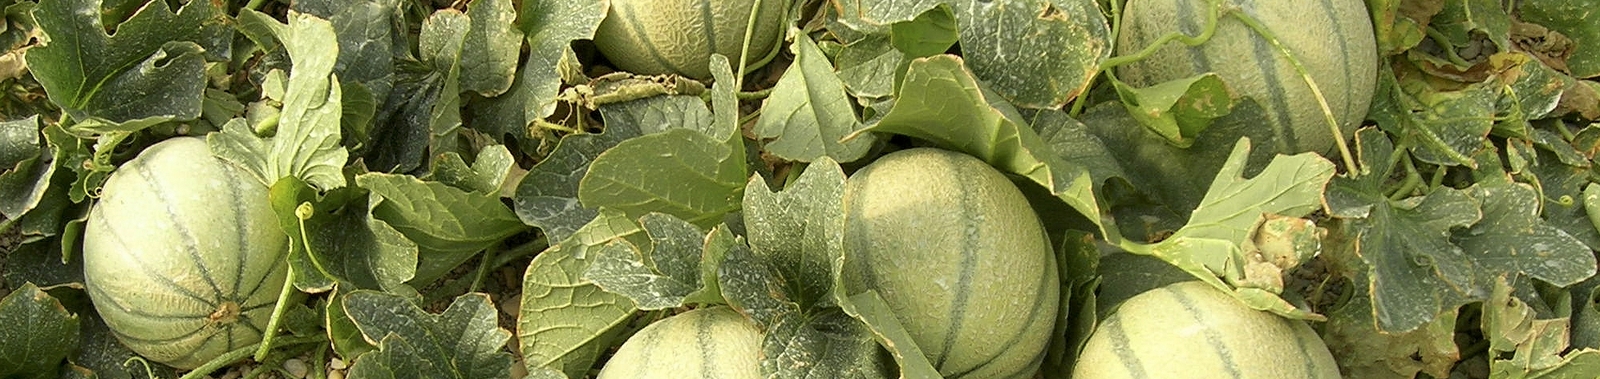 Melon Types